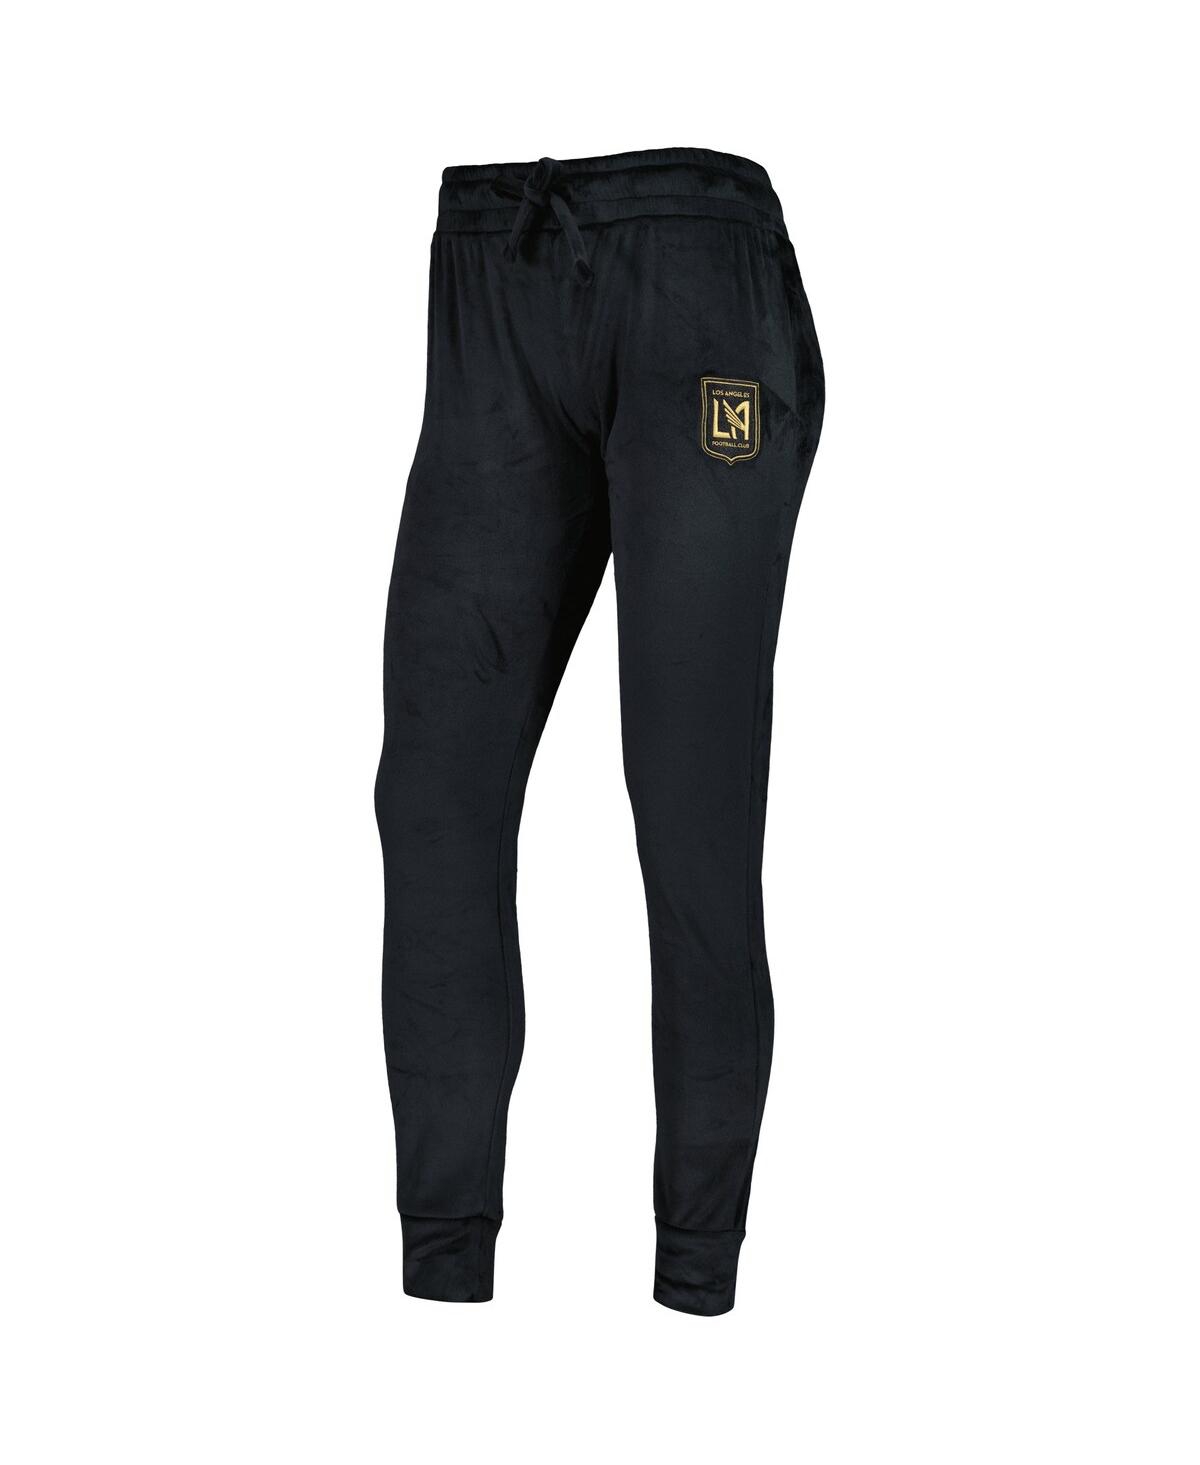 Shop Concepts Sport Women's  Black Lafc Intermission Velour Cuffed Pants